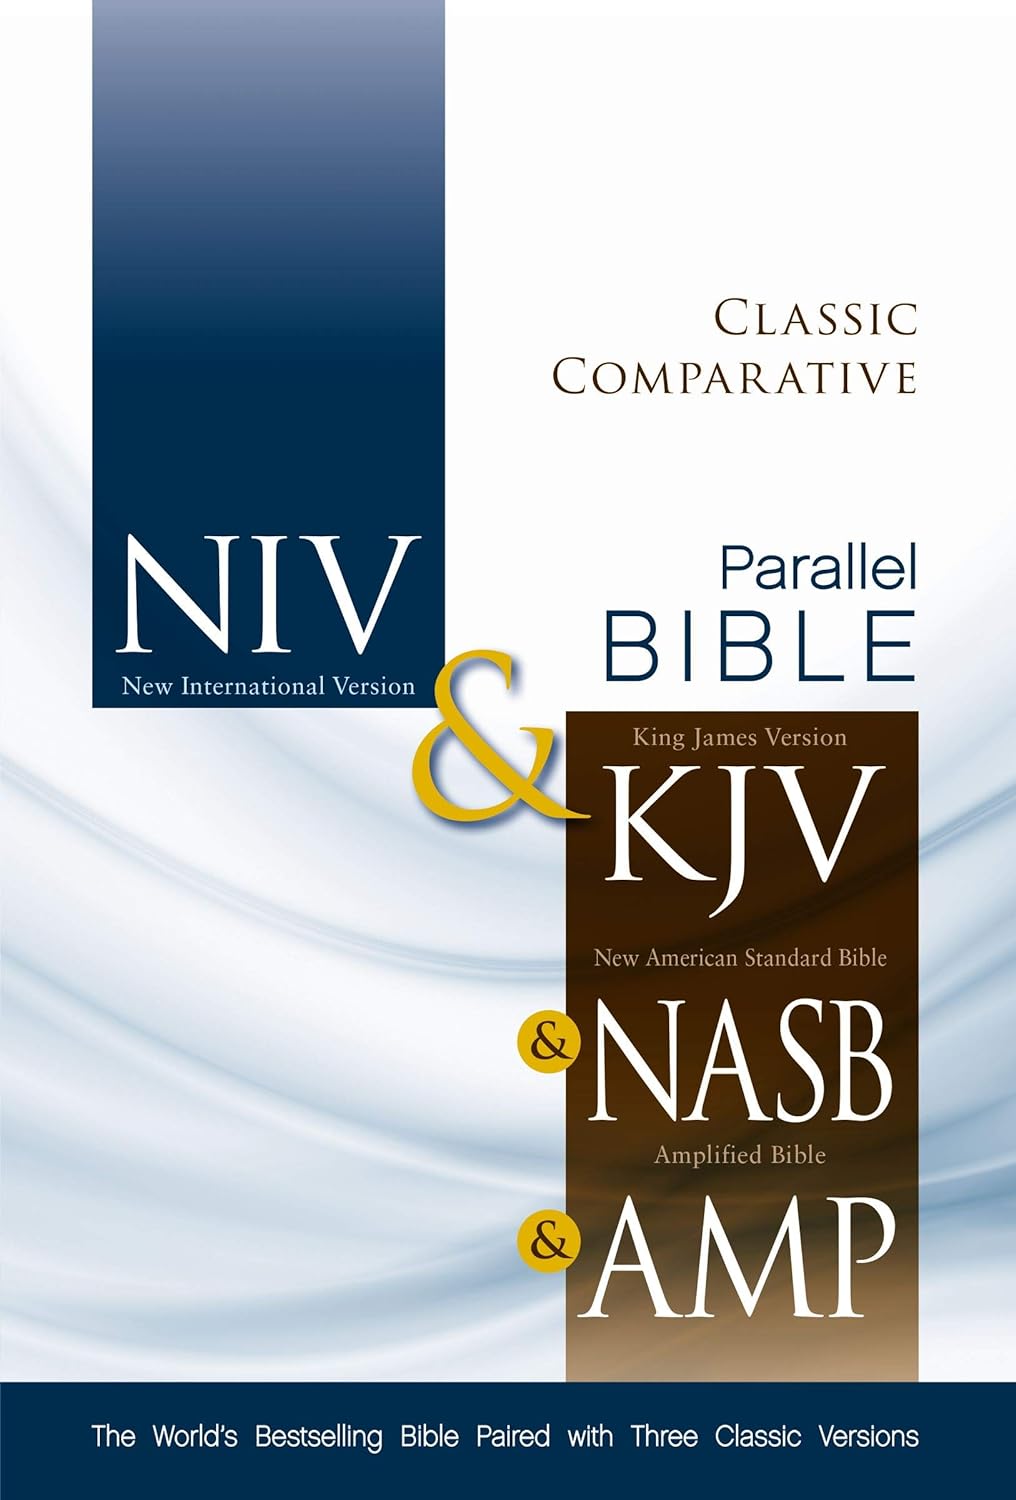 Classic Comparative Parallel Bible—NIV, KJV, NASB, AMP